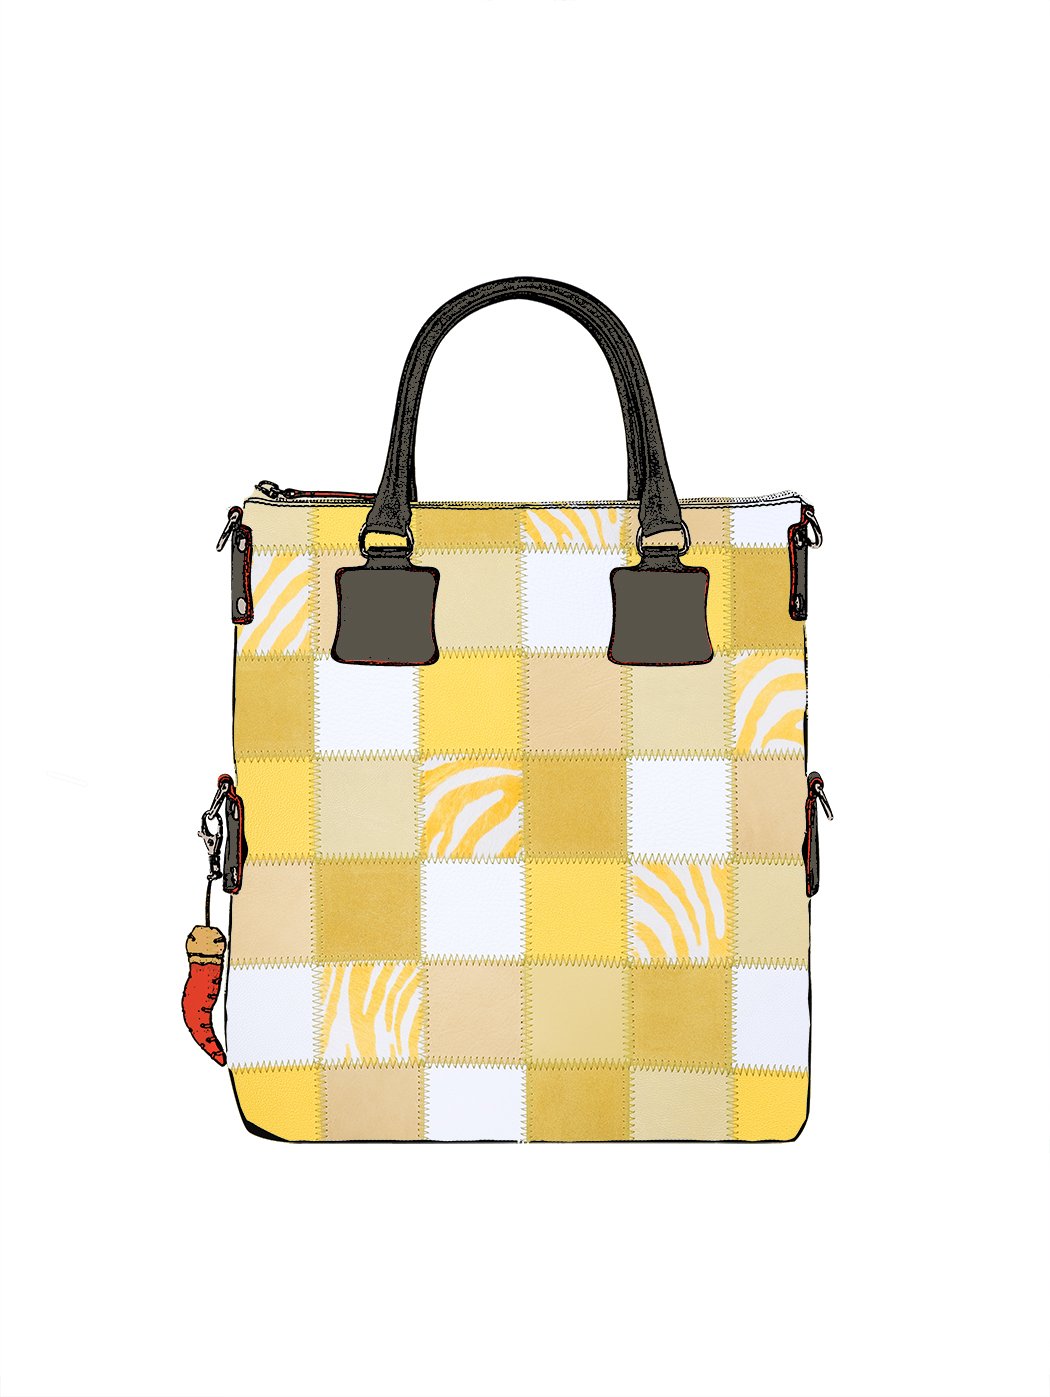 Дизайнерская сумка из коллекции Fortunata в стиле пэчворк желто - бежевого цвета